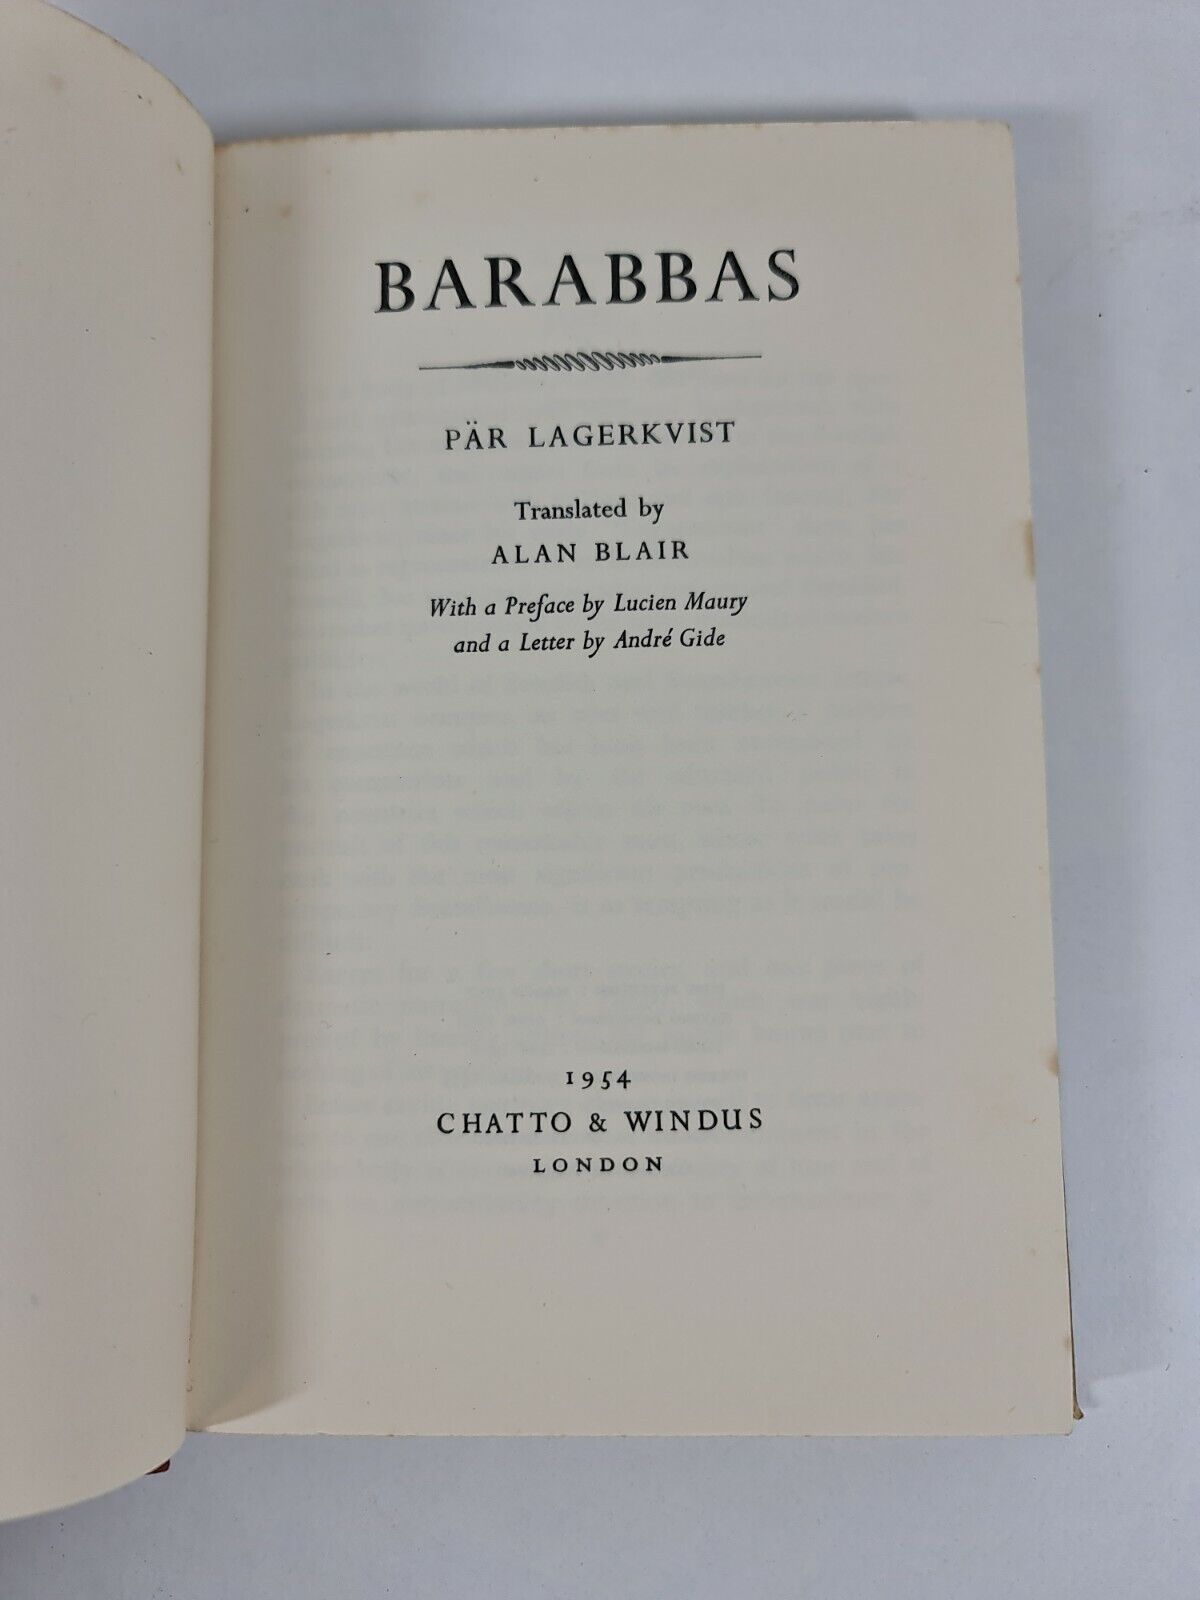 Barabbas by Lagekvist / Alan Blair (1954)